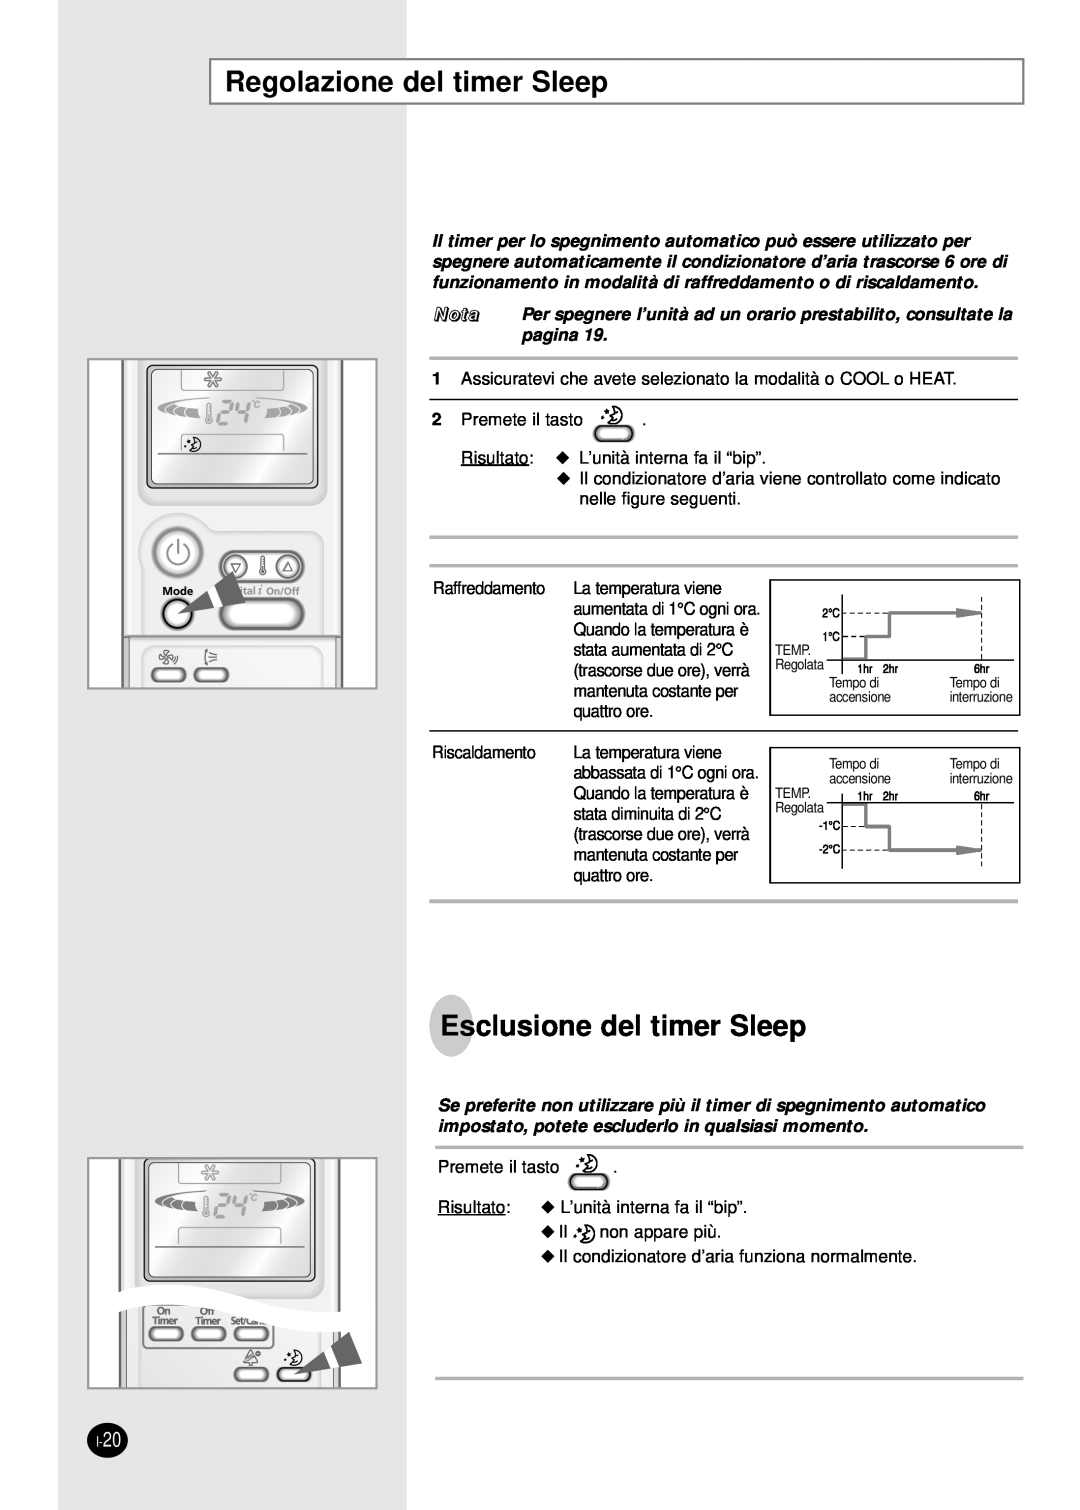 Samsung SH07APG, SH18AP0X, SH09APG, SH12APGX manual Regolazione del timer Sleep, Esclusione del timer Sleep, Nota, pagina 